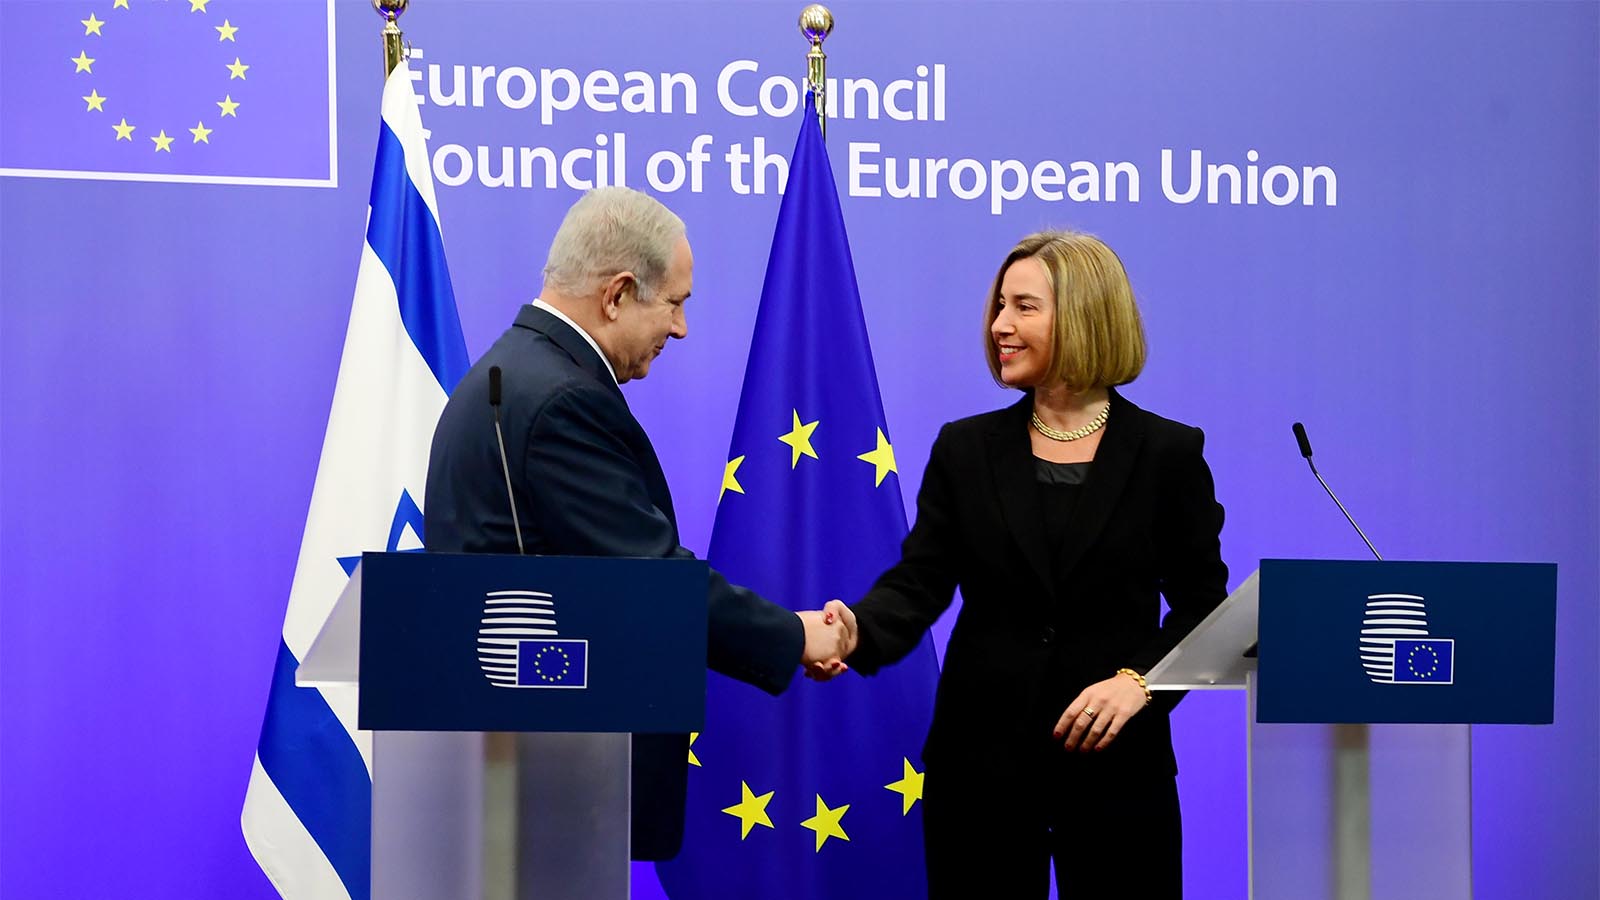 ראש הממשלה נתניהו נפגש עם שרת החוץ של האיחוד האירופי פדריקה מוגריני במטה המועצה האירופית בבריסל, בלגיה. 11.12.17 (צילום: אבי אוחיון/ לע&quot;מ)